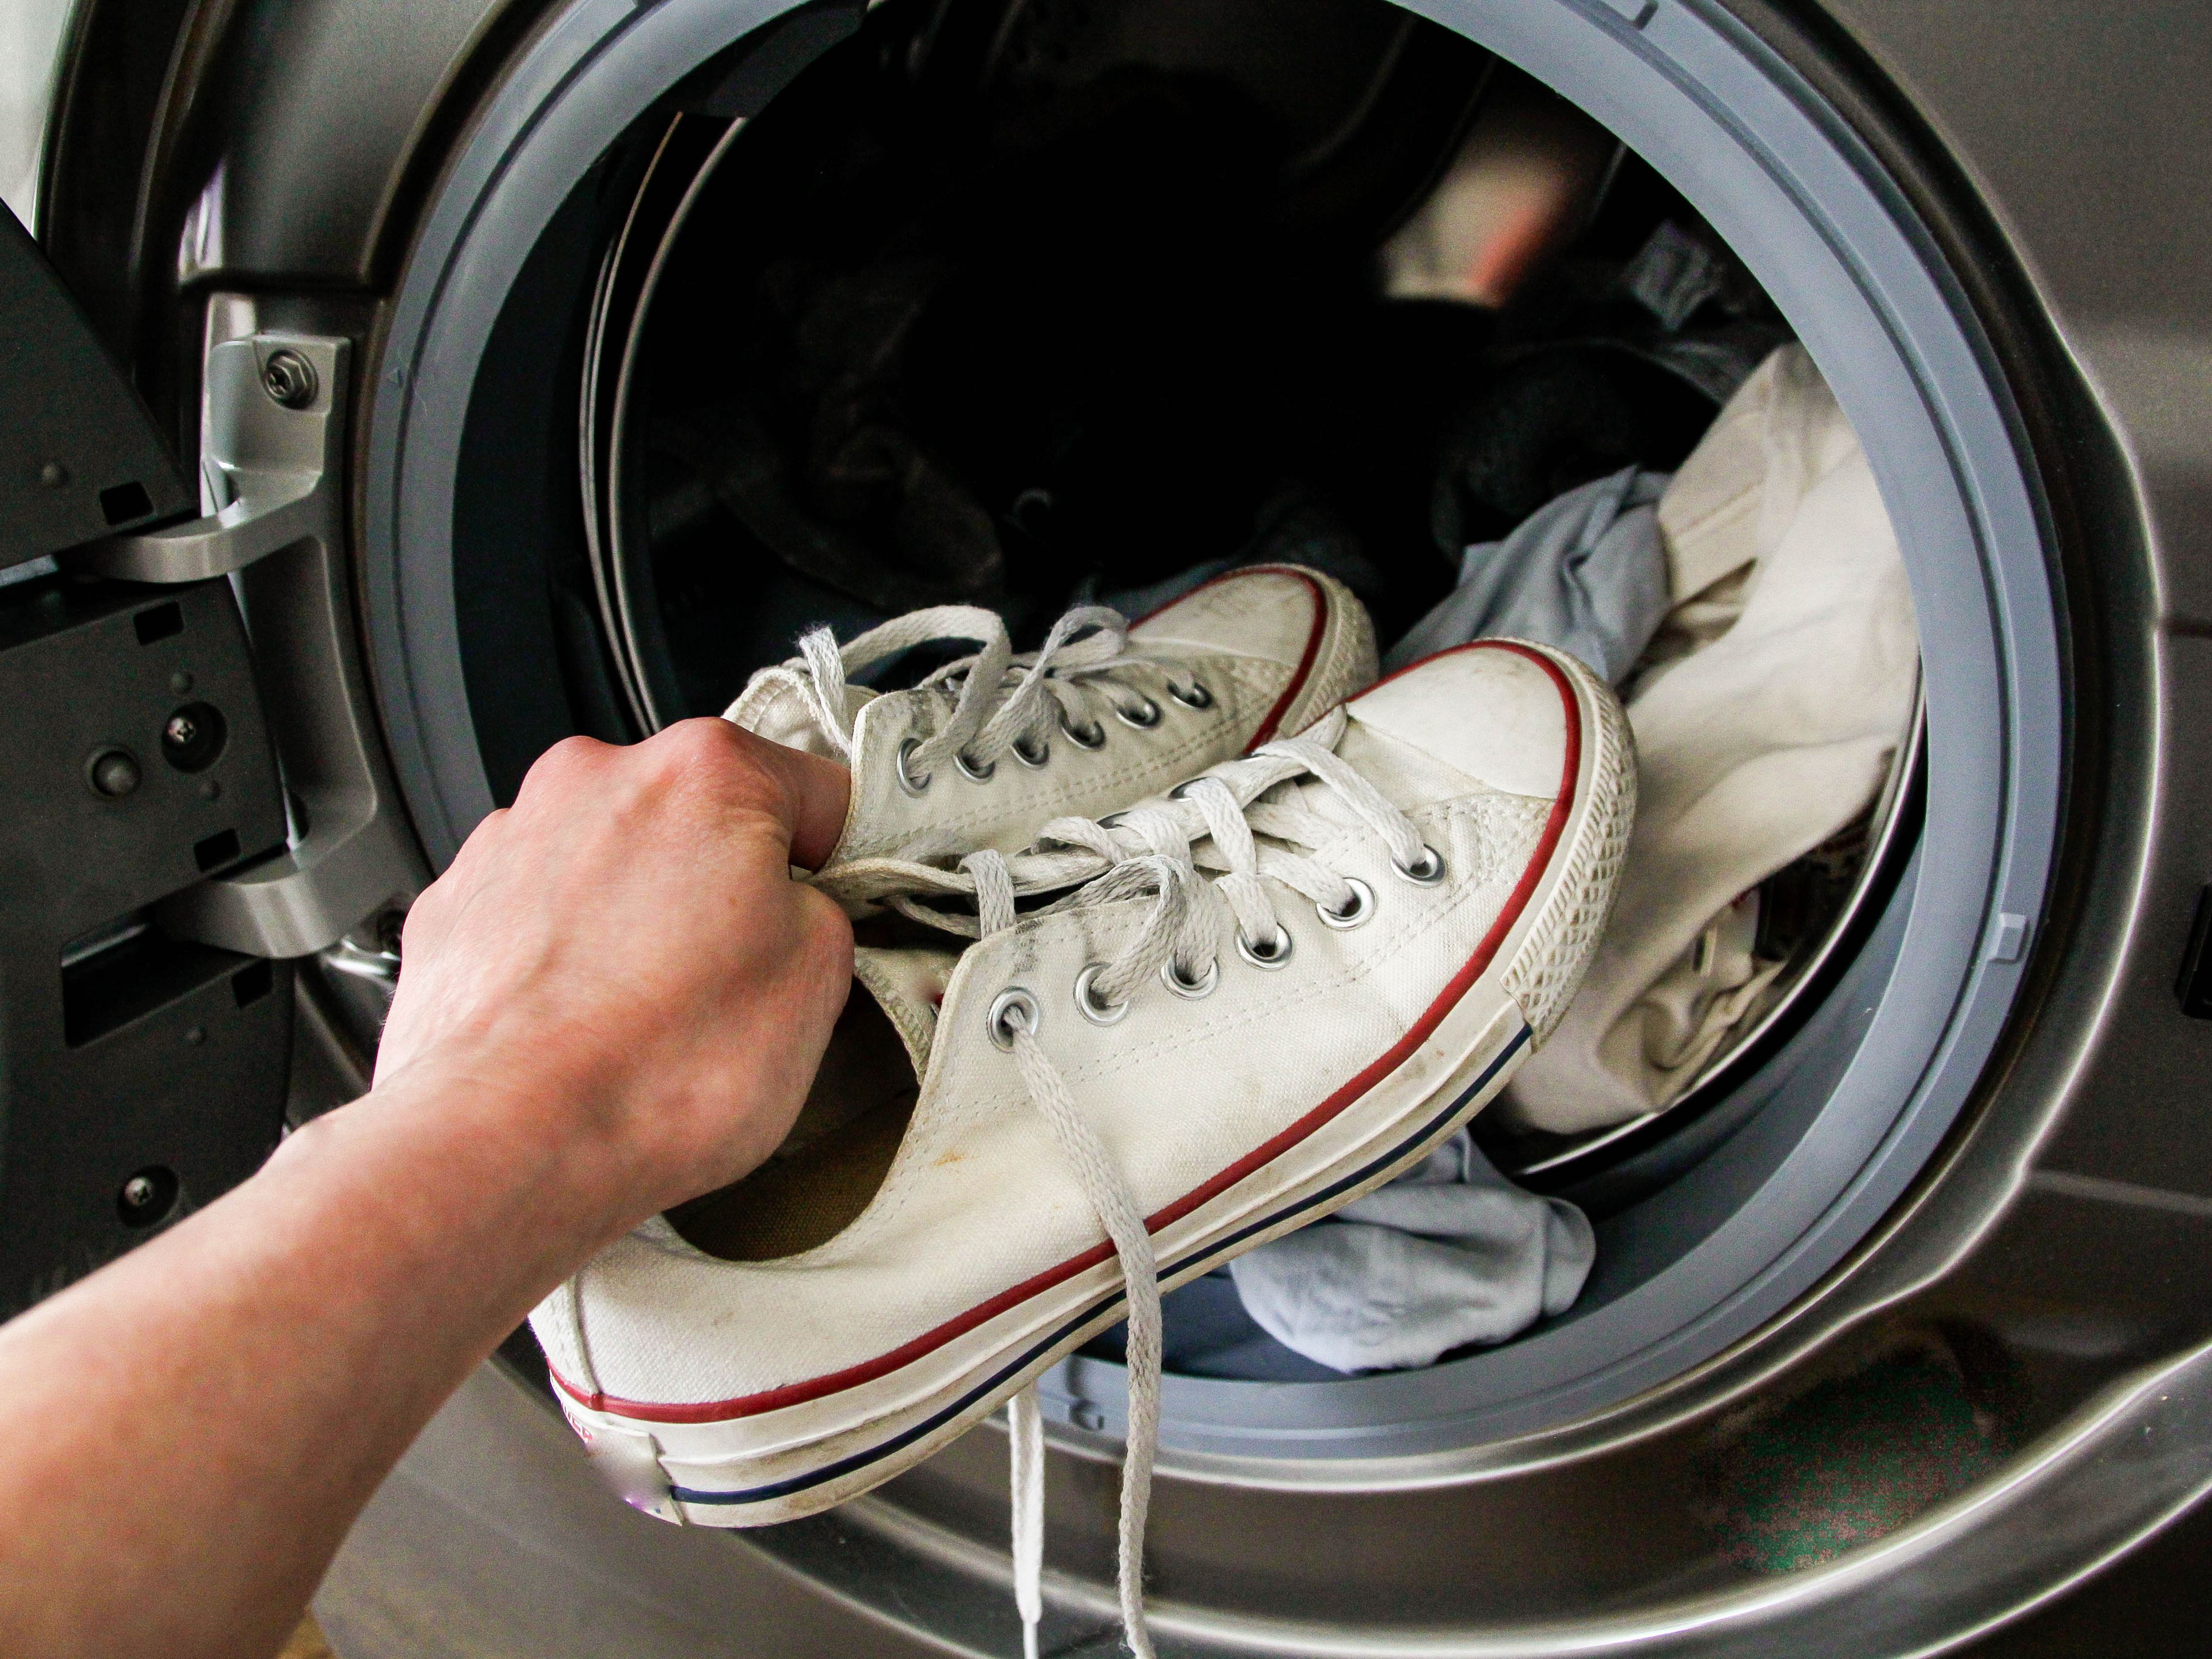 Découvrez l'astuce imparable pour laver vos baskets à la machine